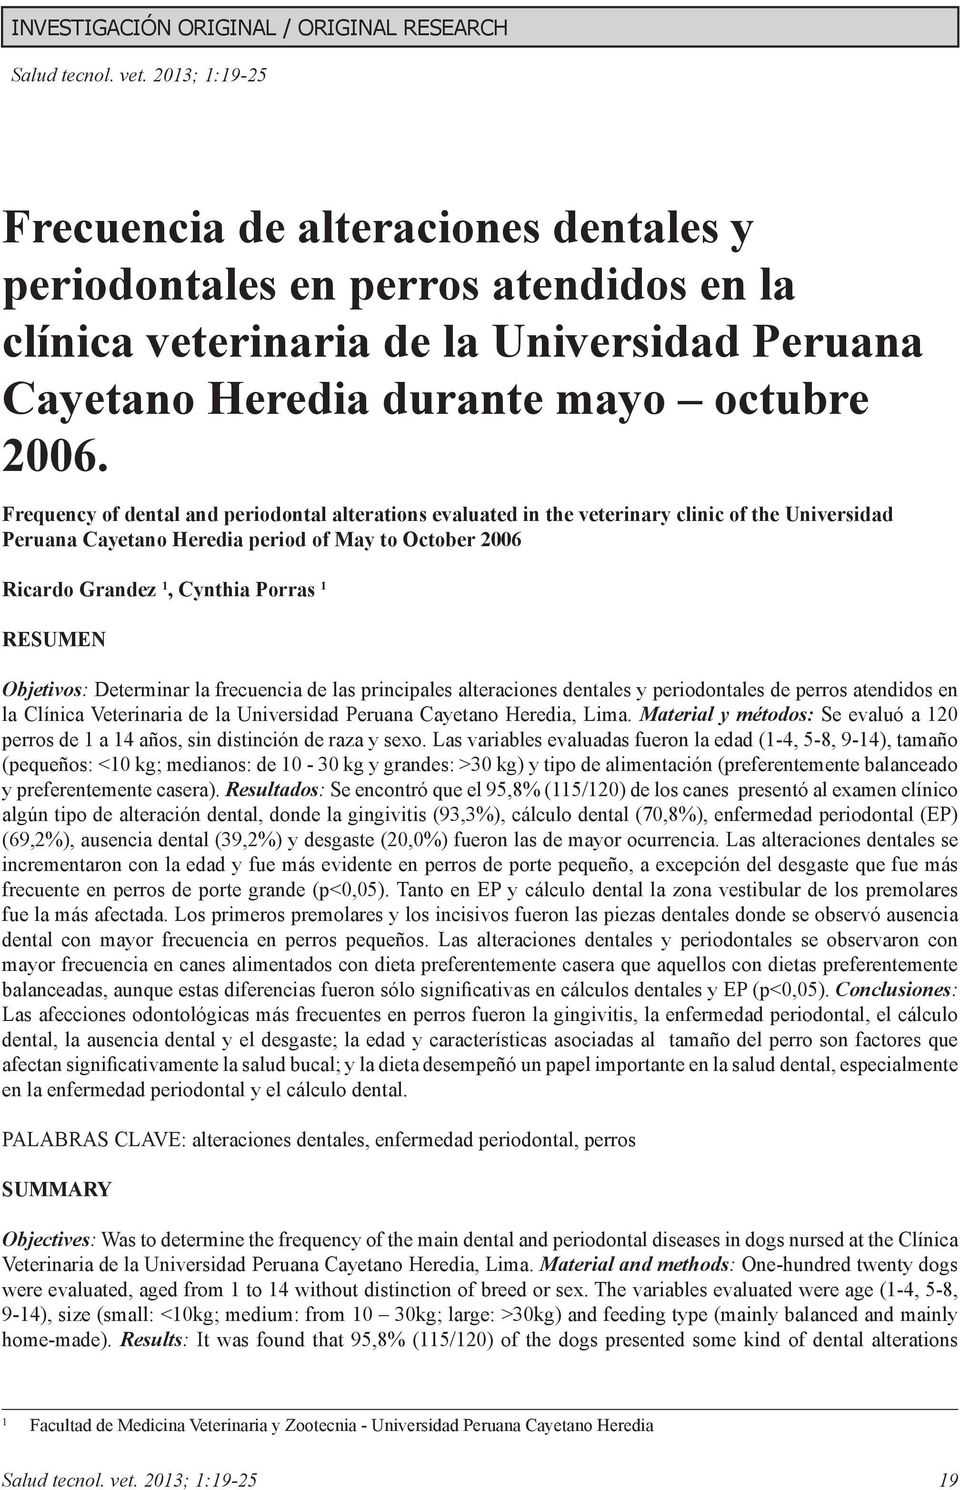 RESUMEN Objetivos: Determinar la frecuencia de las principales alteraciones dentales y periodontales de perros atendidos en la Clínica Veterinaria de la Universidad Peruana Cayetano Heredia, Lima.